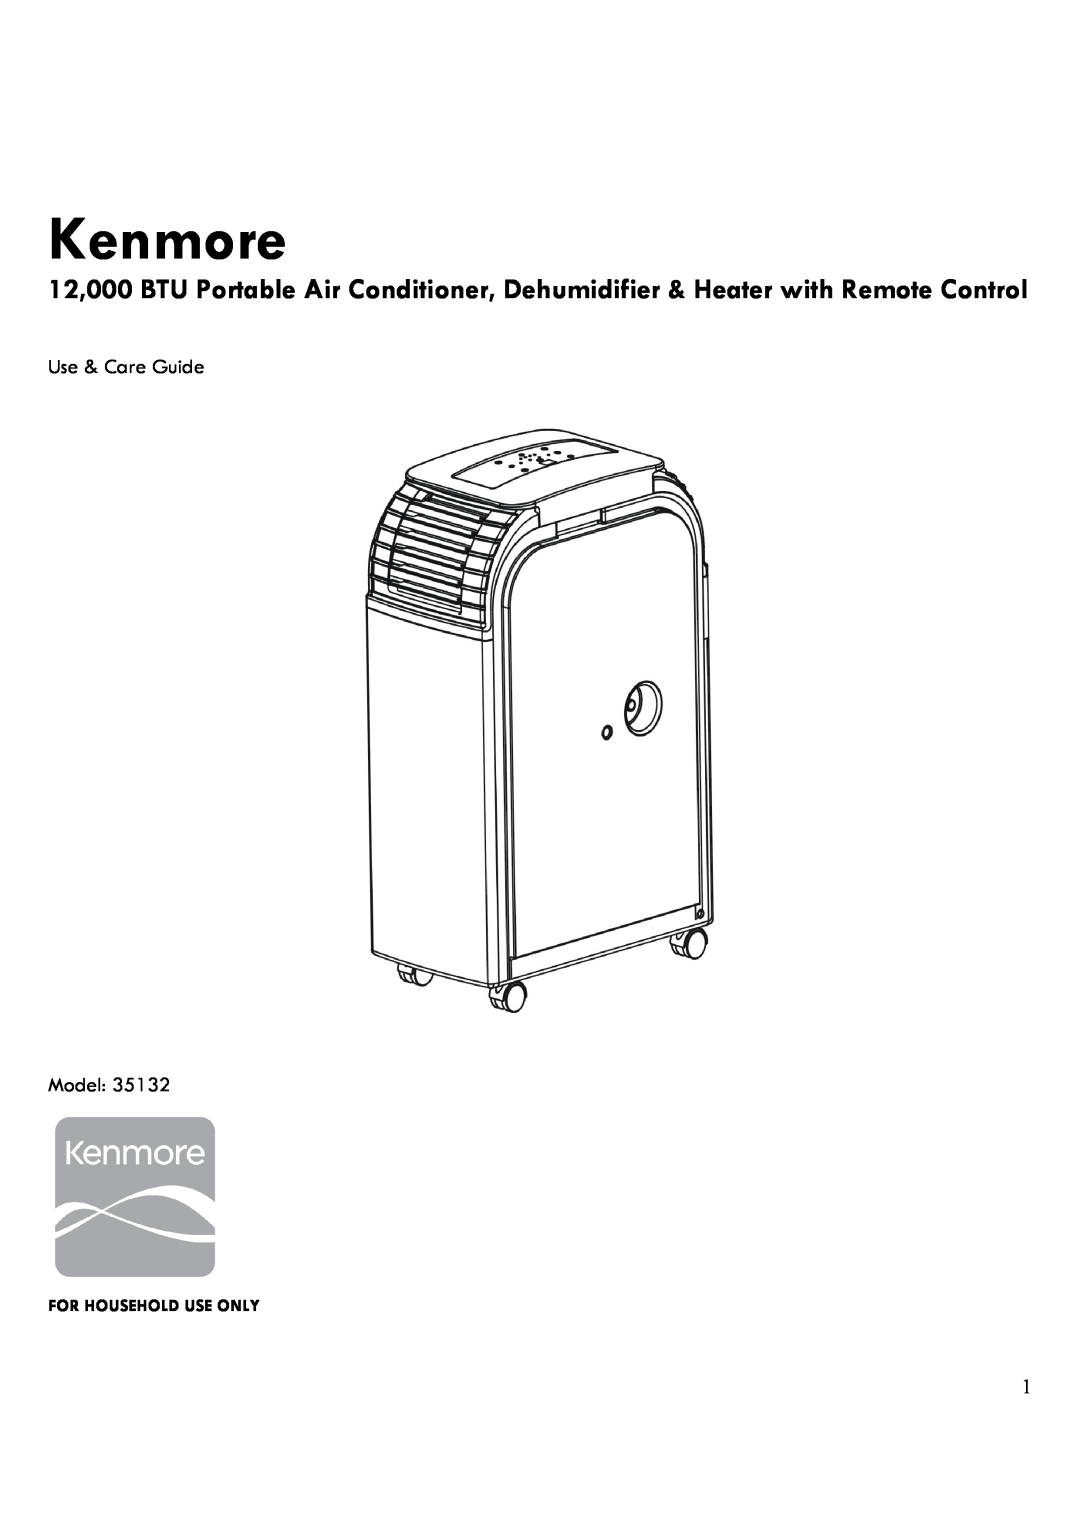 Kenmore 35132 manual Kenmore, Use & Care Guide Model 